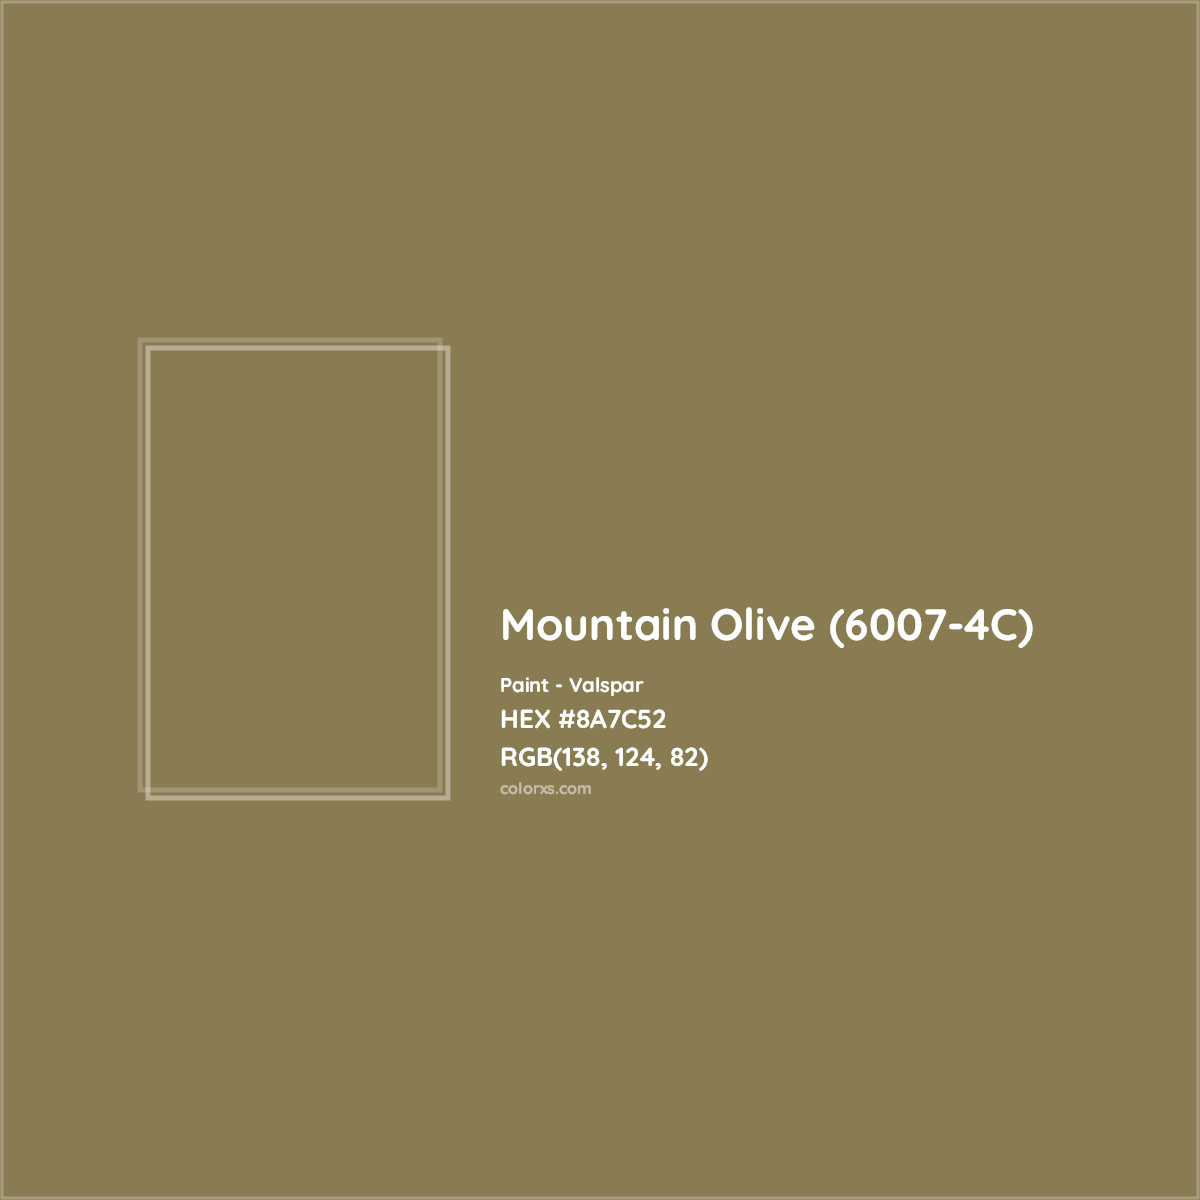 HEX #8A7C52 Mountain Olive (6007-4C) Paint Valspar - Color Code